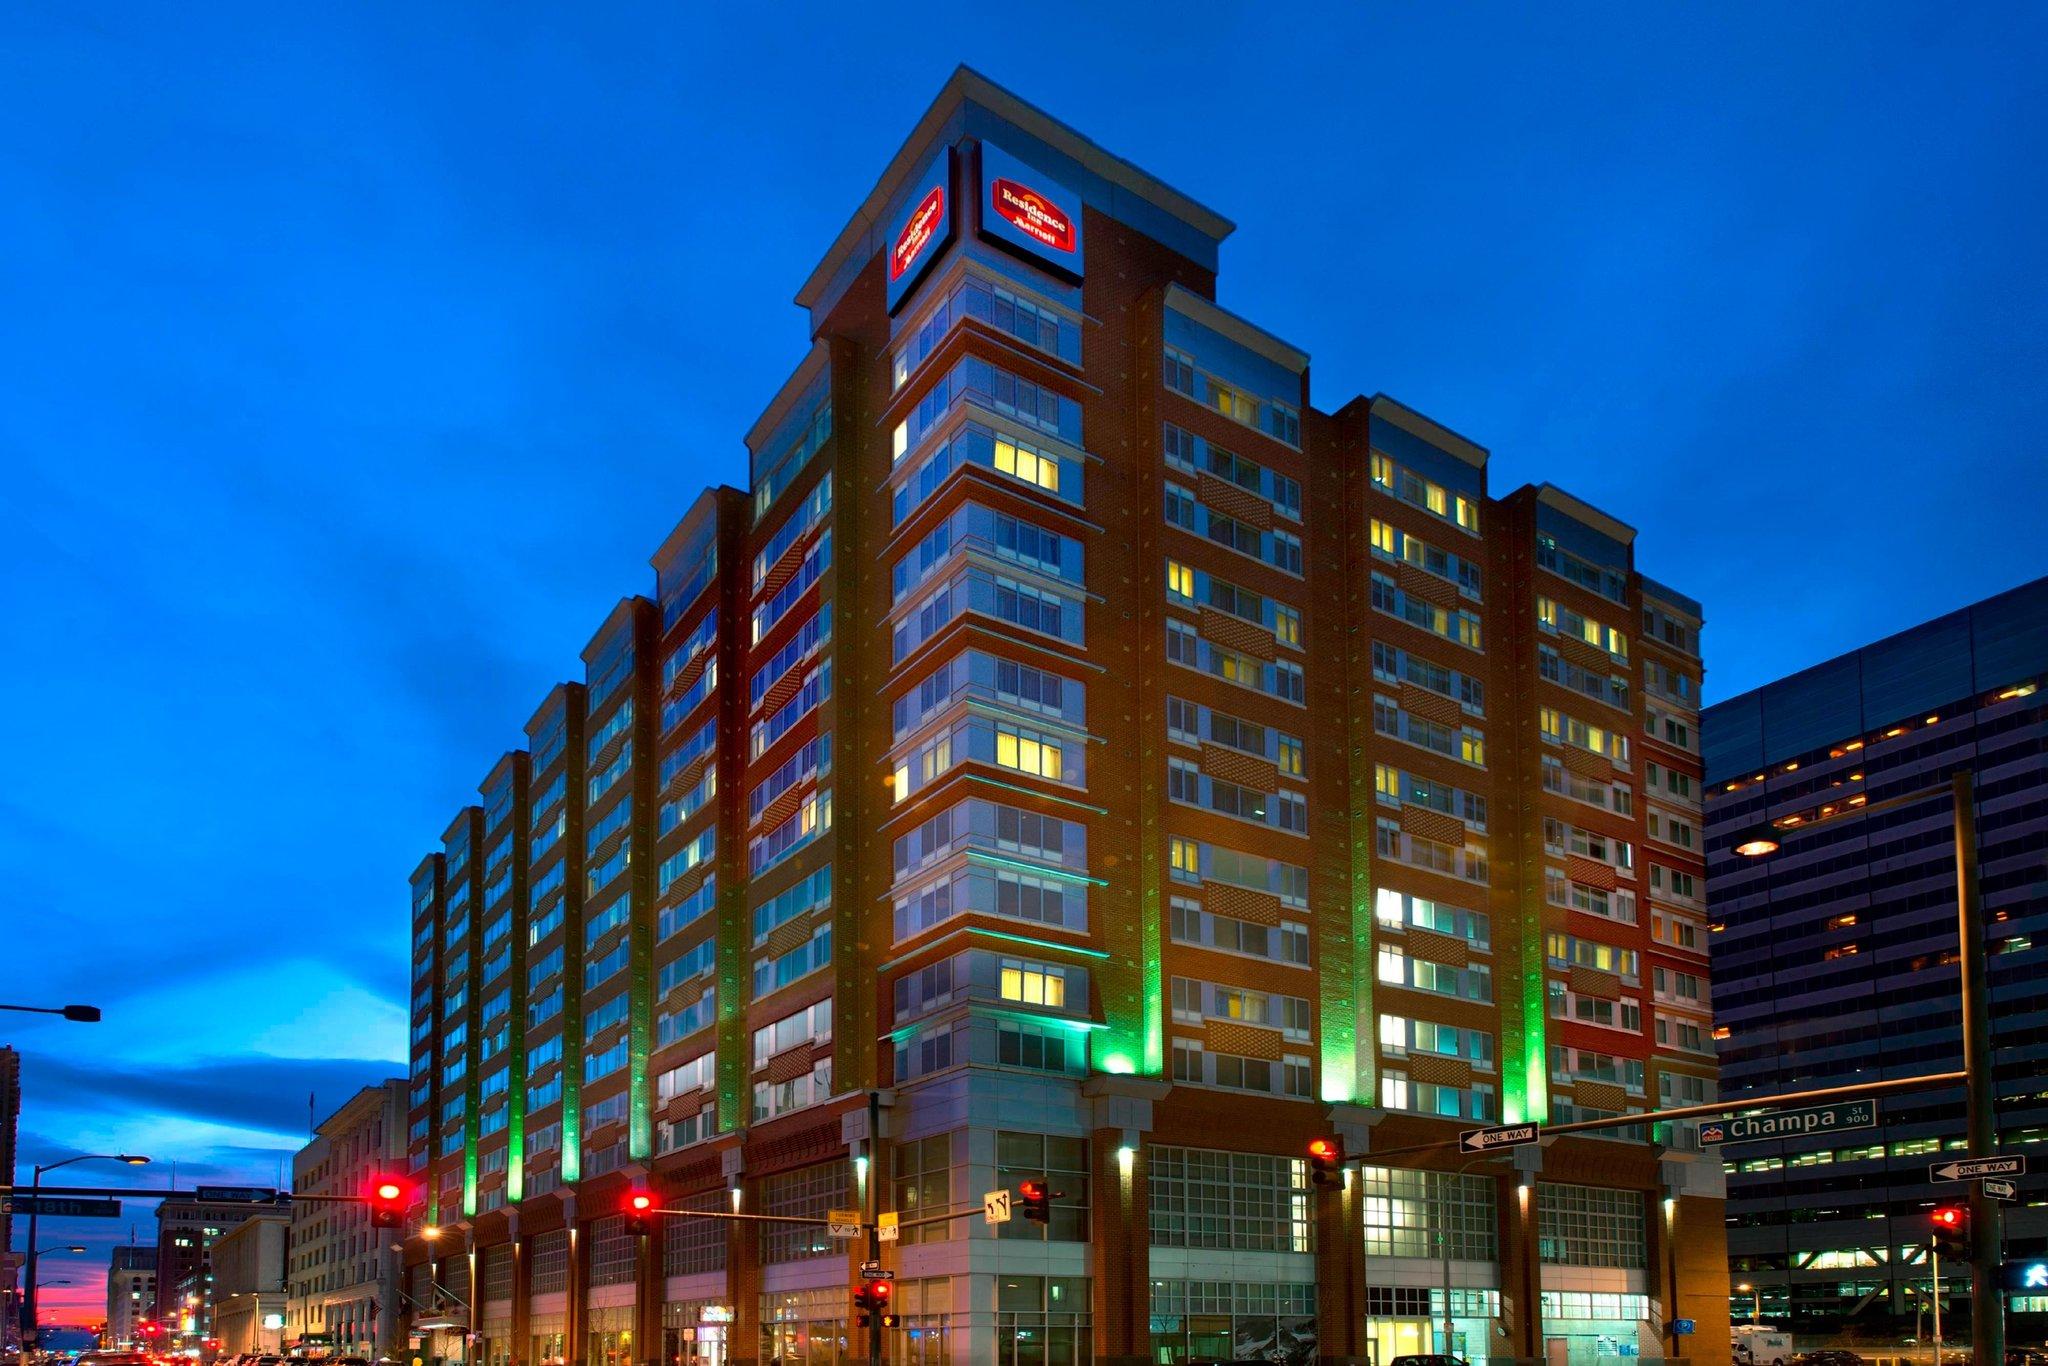 Residence Inn Denver City Center in Denver, CO